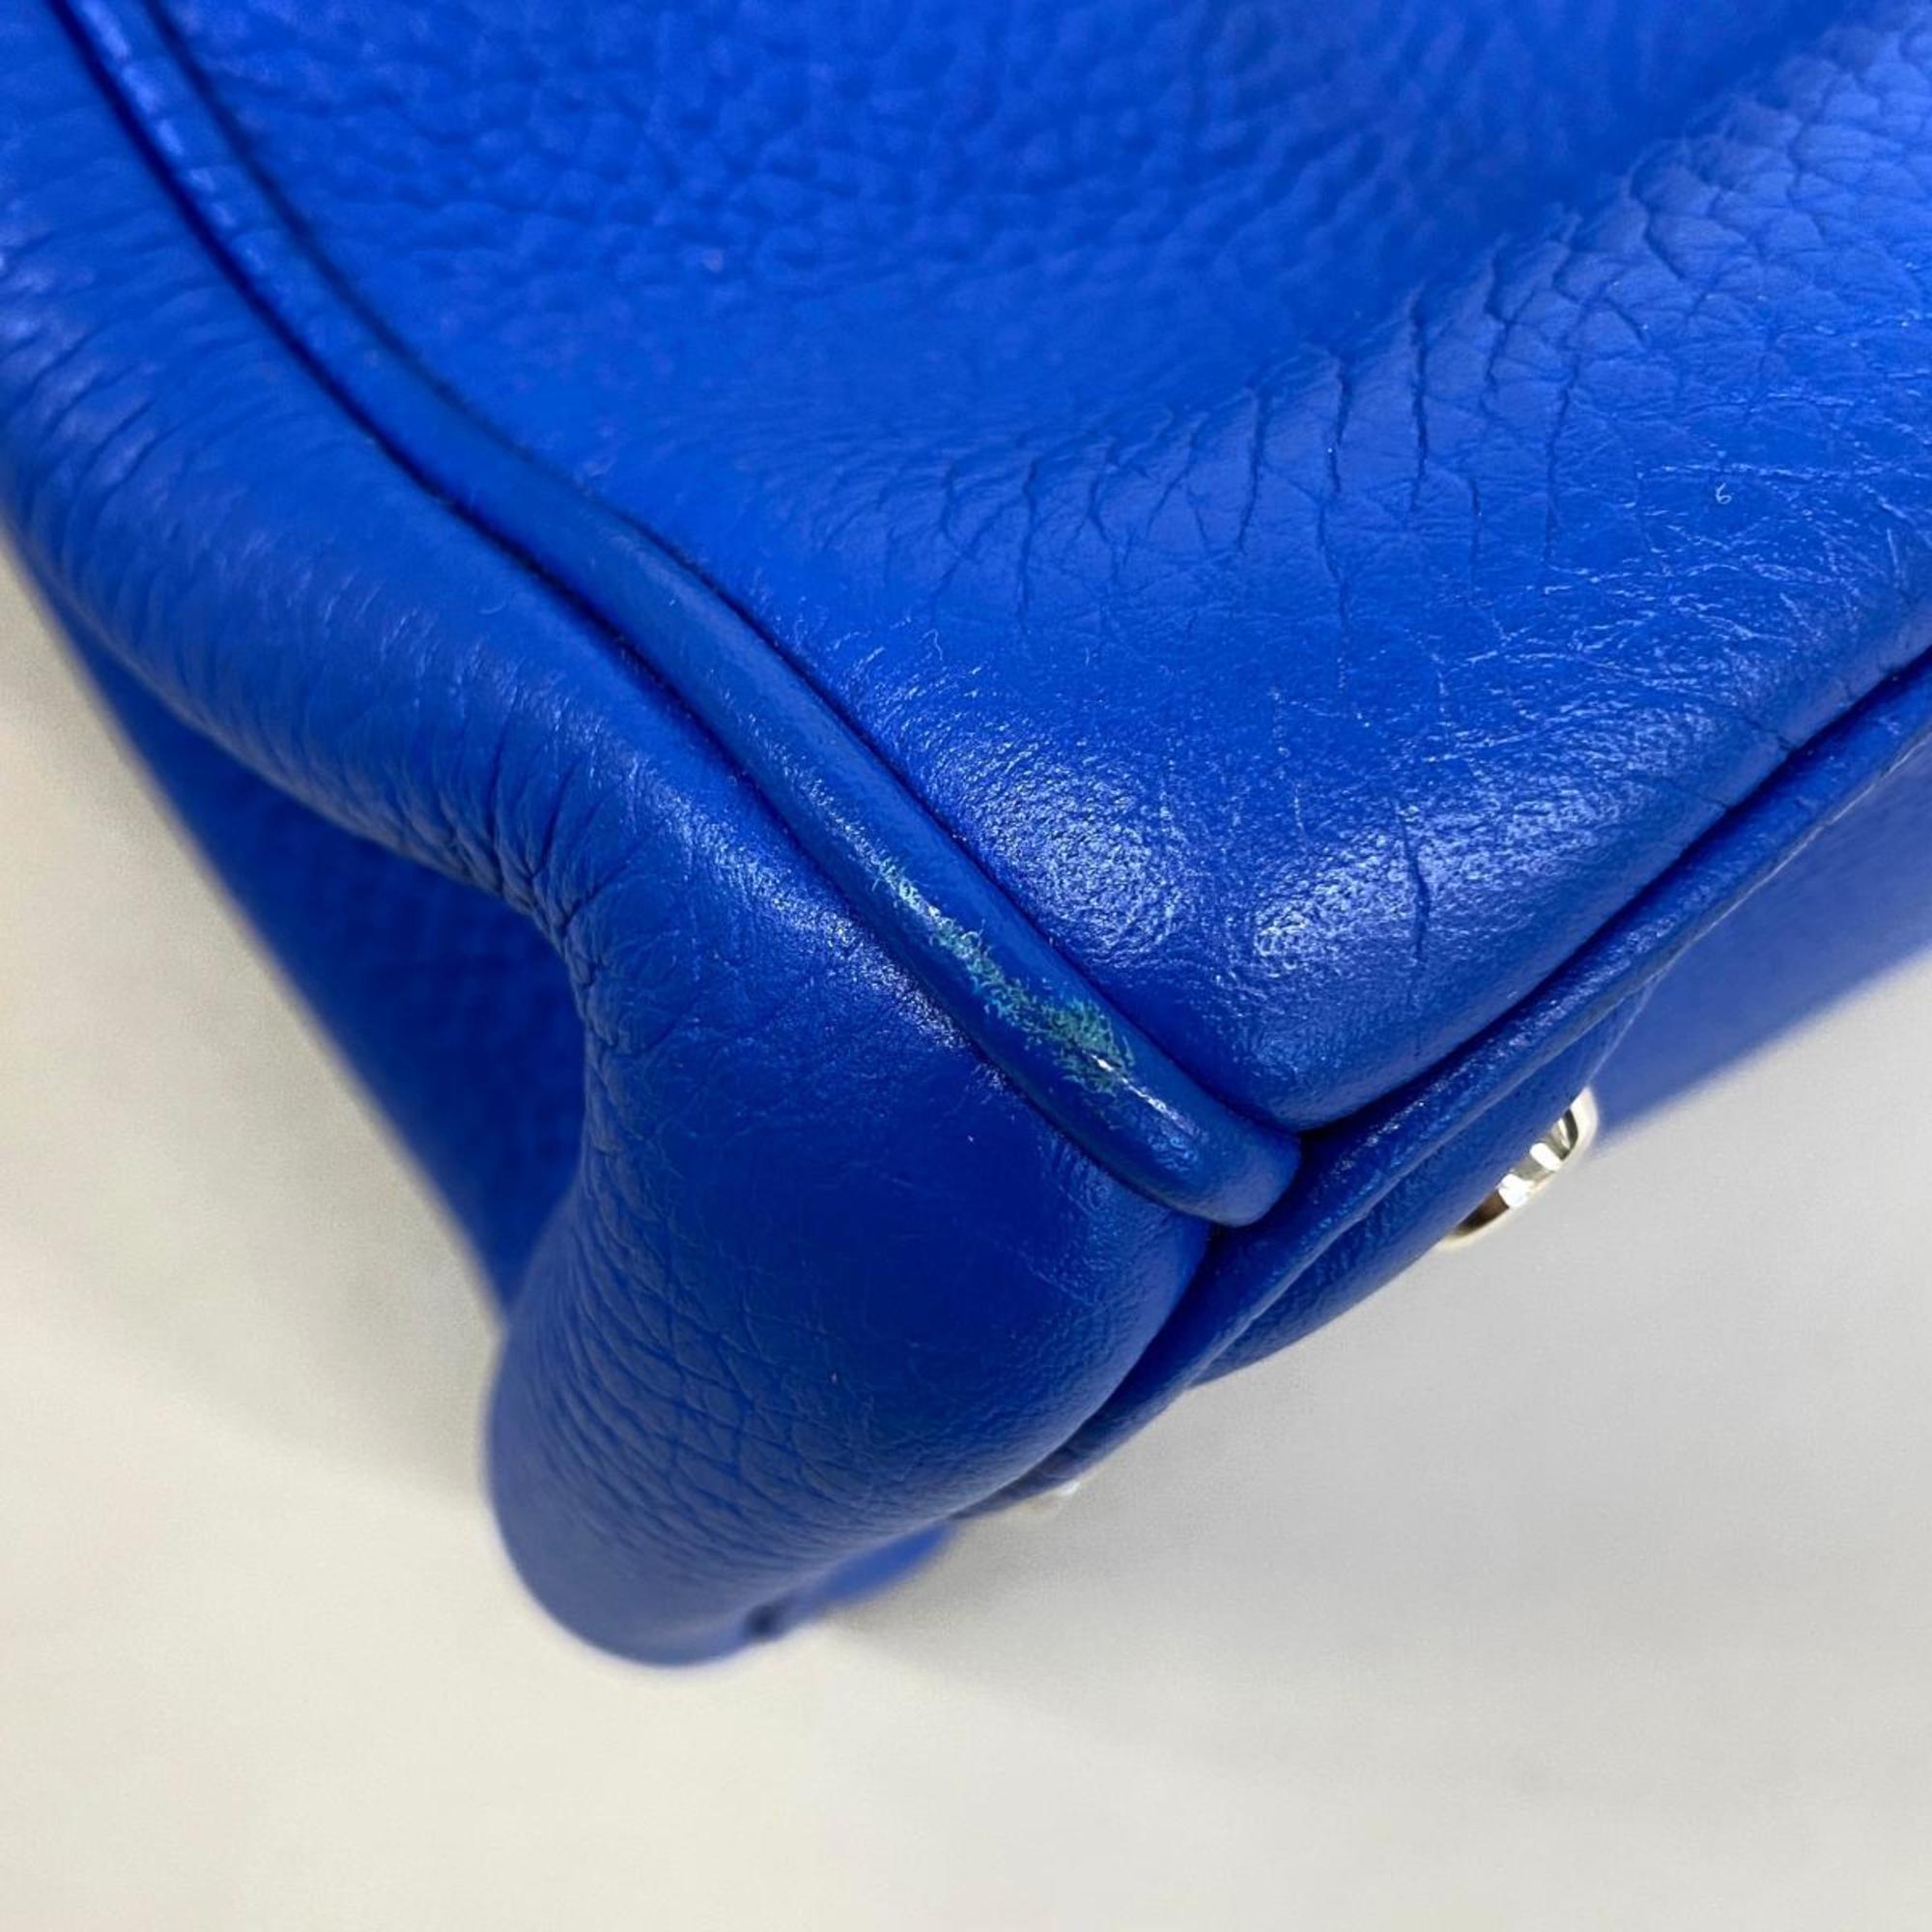 Christian Dior Handbag Diorissimo Leather Blue Women's